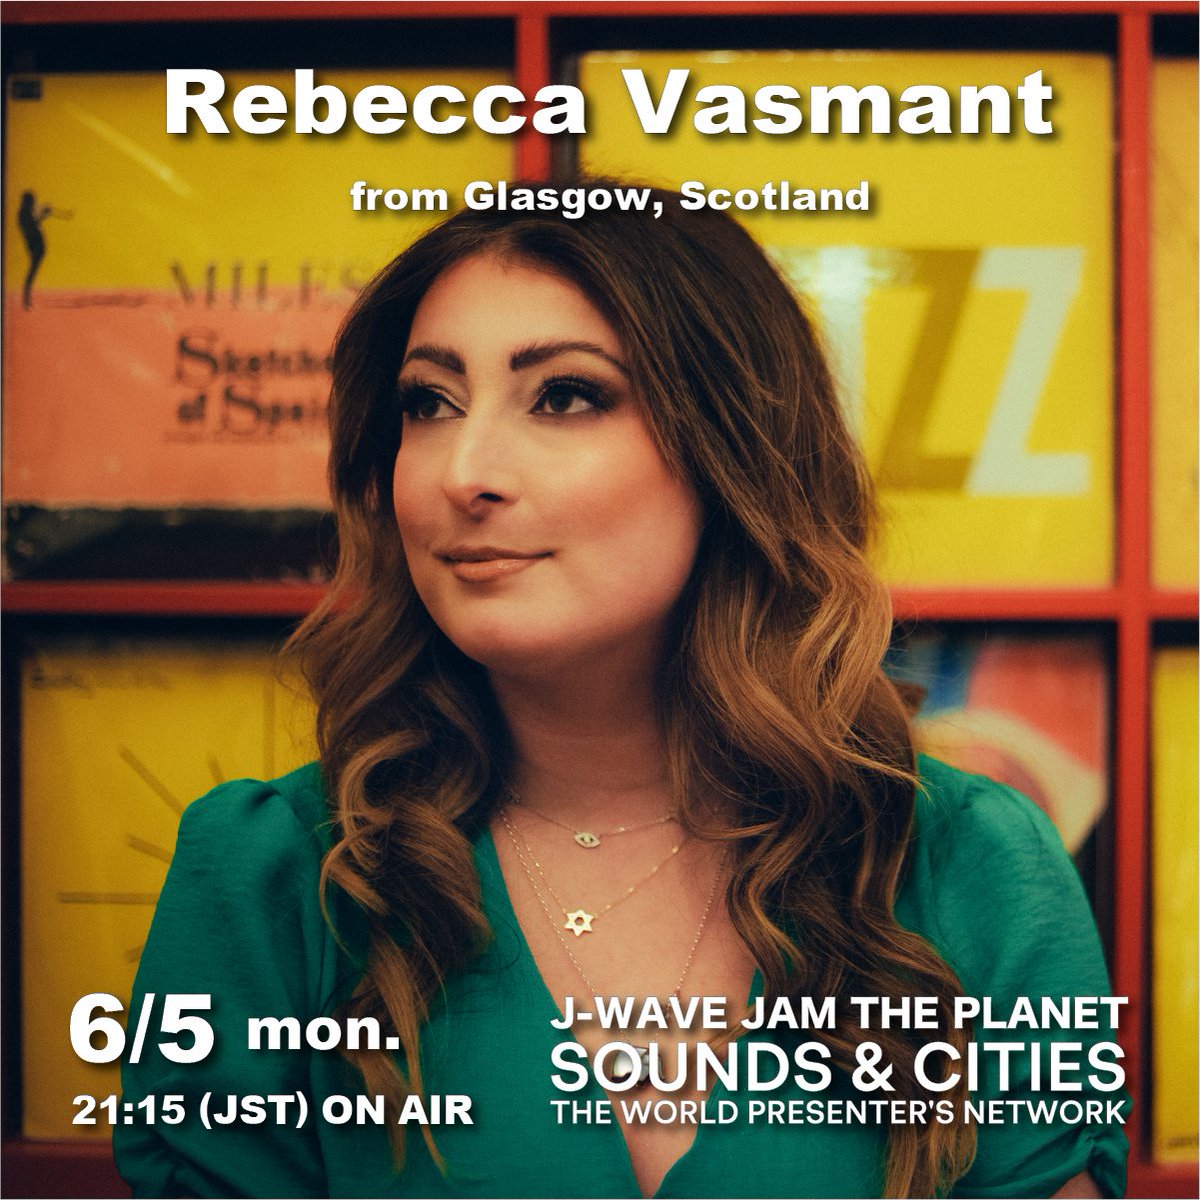 🎧SOUNDS & CITIES🎧 ここでしか聴けないRADIO SHOW 世界中でラジオDJやMC、音楽プロデューサーとして活躍するプレゼンターたちが、日替わりで登場！ 6/5(月)は、スコットランド‧グラスゴーから！ 音楽プロデューサー＆キュレーターの #RebeccaVasmant(@RebeccaVasmant)がセレクト！ #jamtheplanet